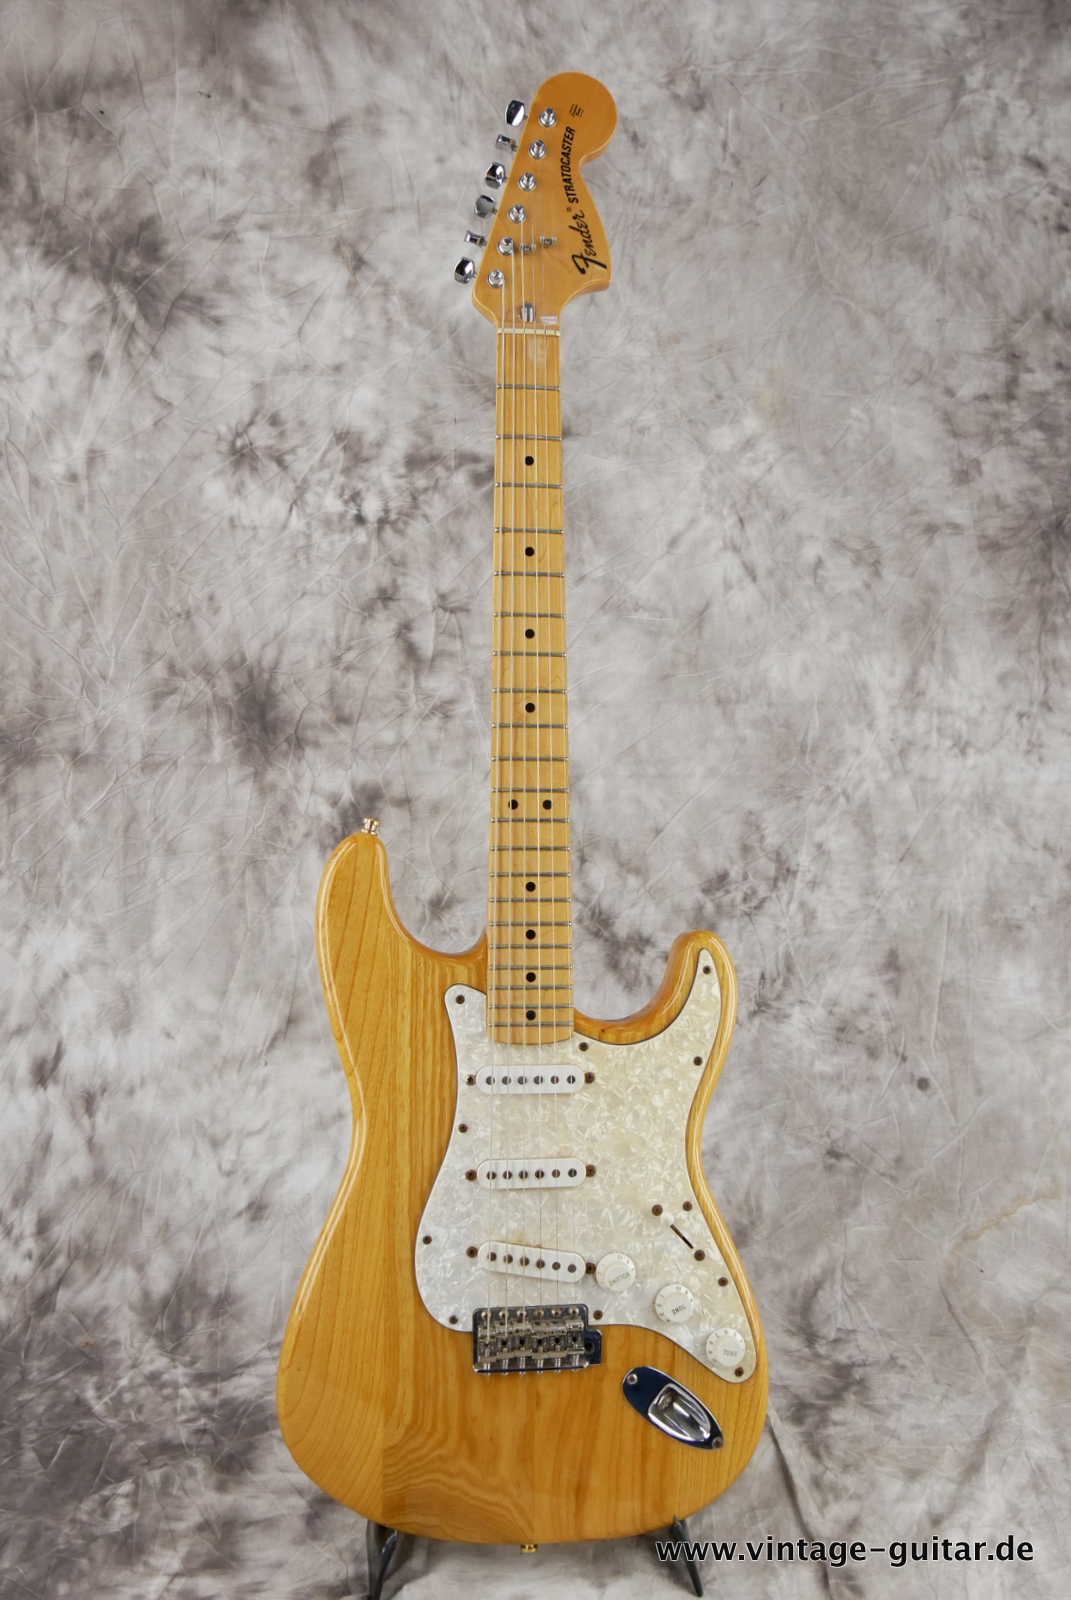 img/vintage/5322/Fender_Stratocaster_70s_reissue_maple_neck_1999_Mexico-001.JPG